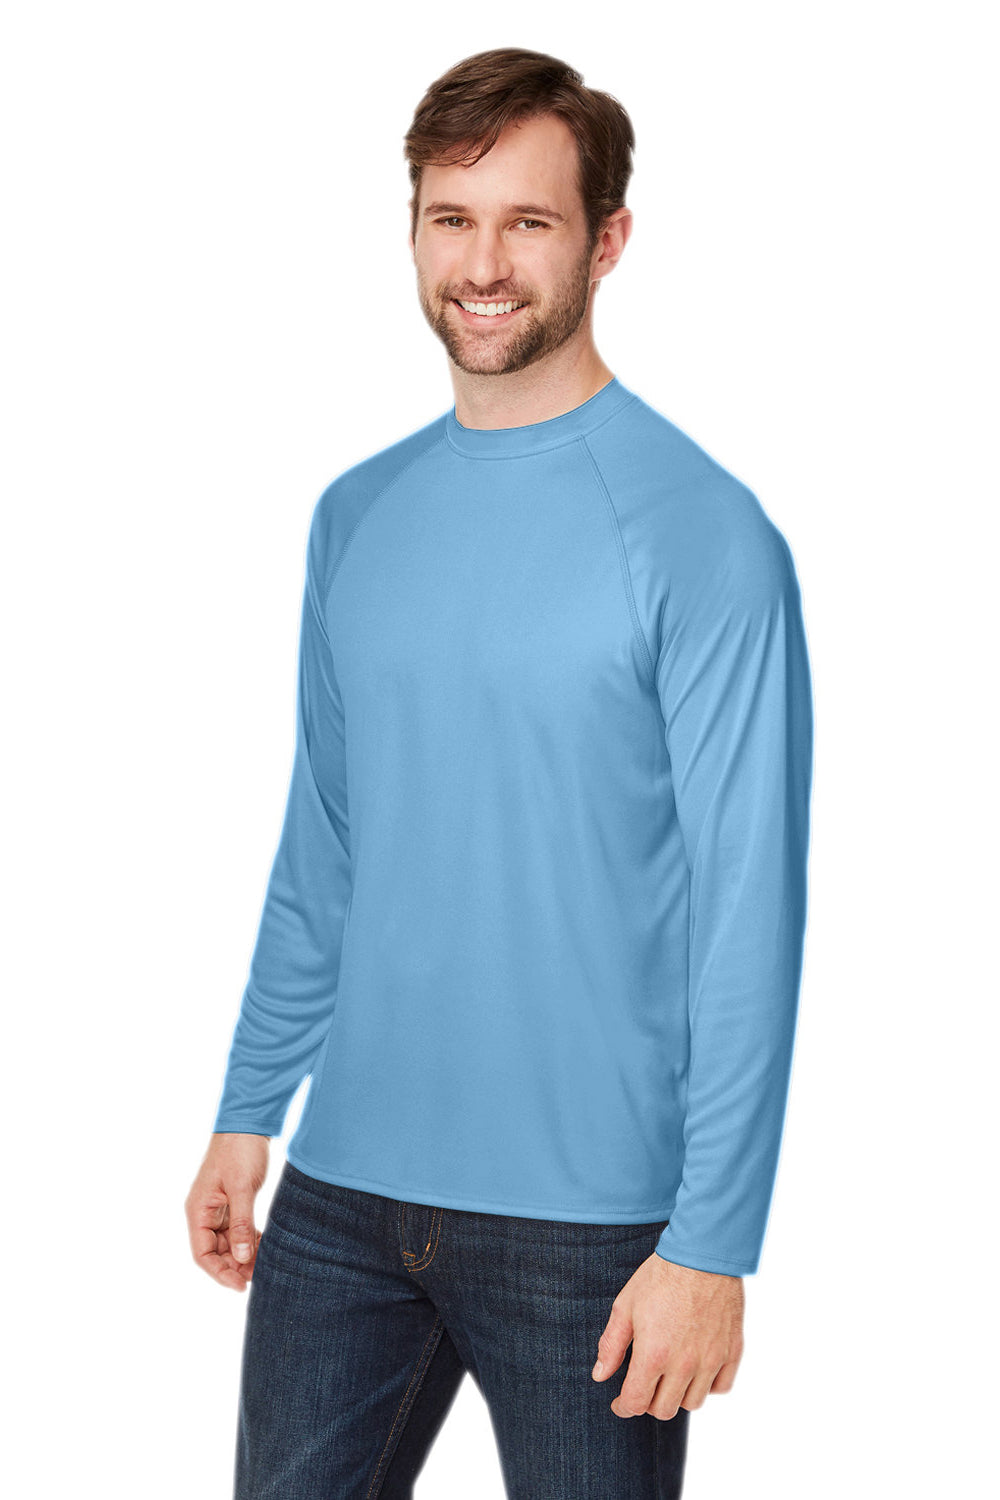 Core 365 CE110 Mens Ultra MVP Raglan Long Sleeve T-Shirt Columbia Blue 3Q